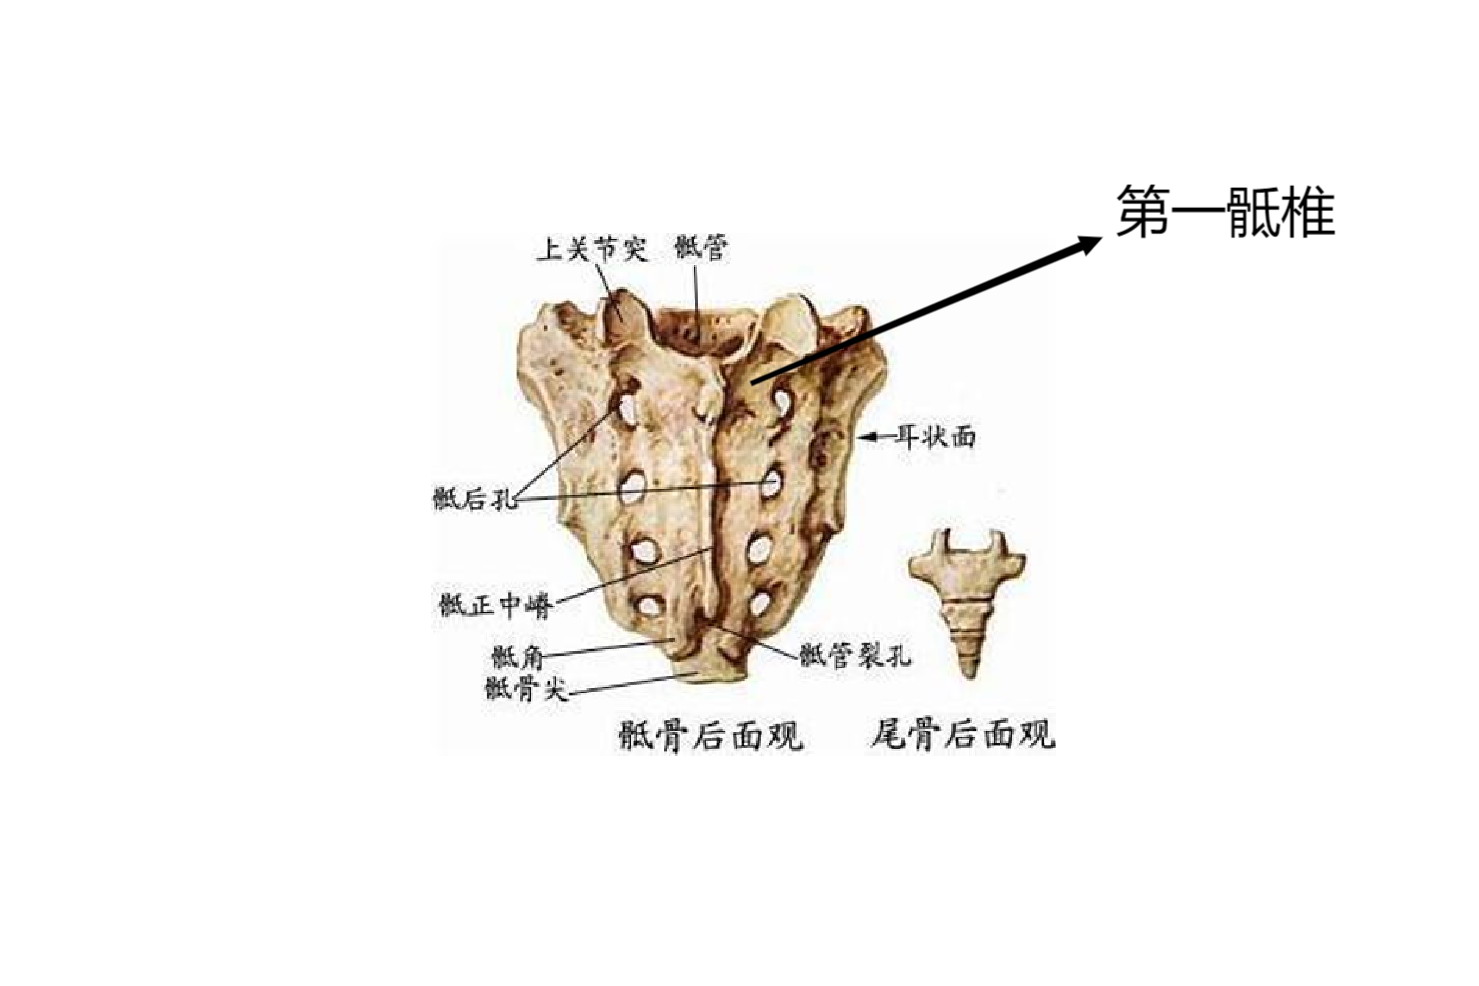 骶骨位于腰椎的下方,是脊柱的最后一部分,体表投影与腰部下方臀部上方